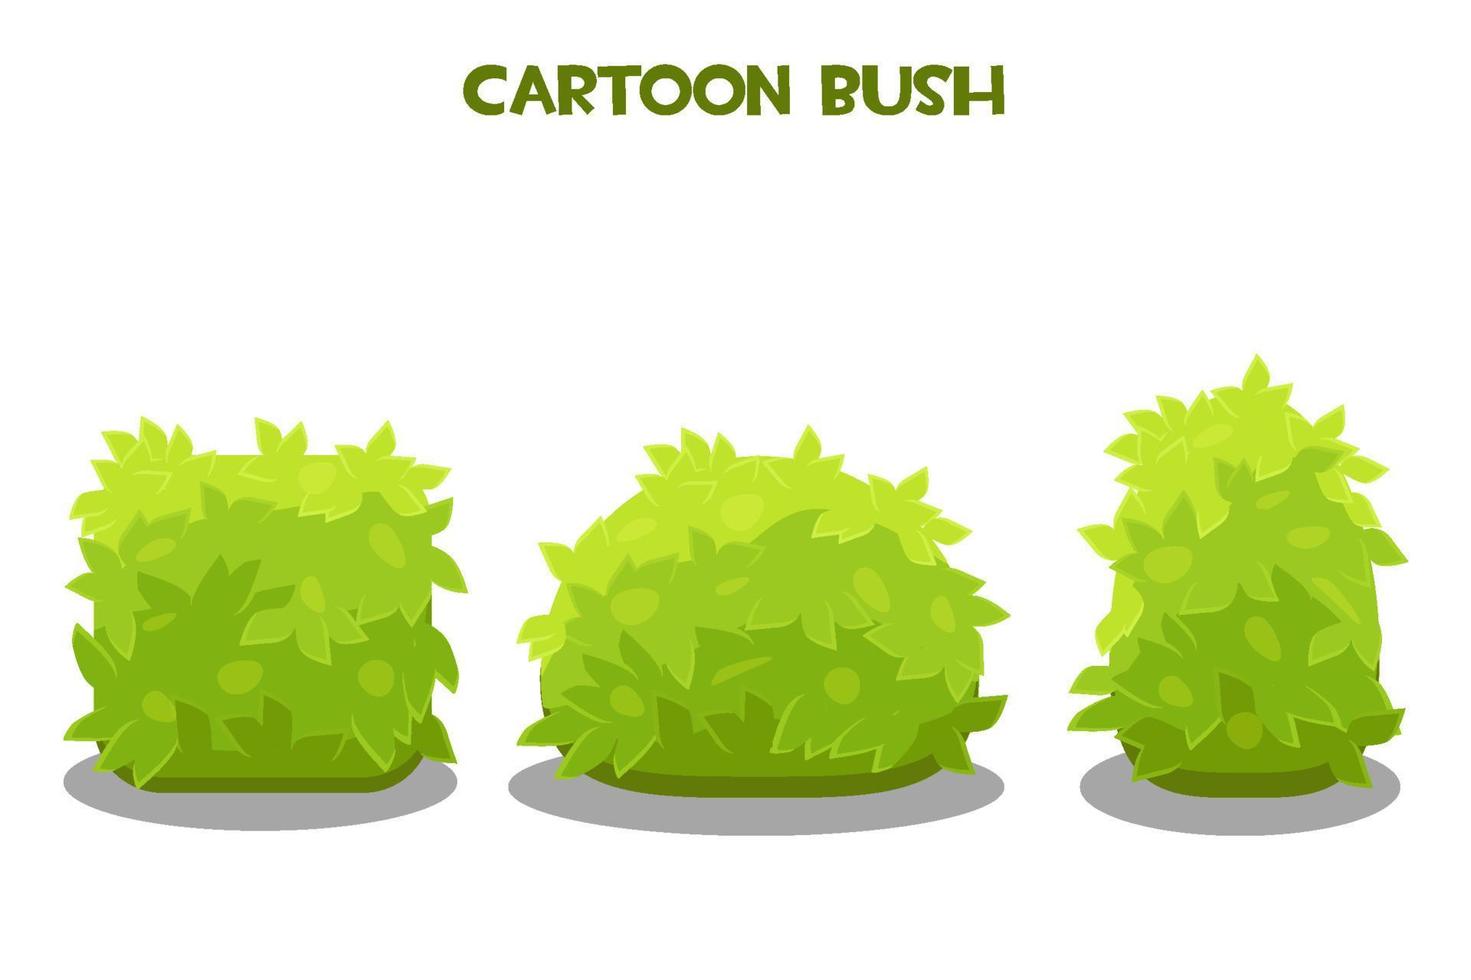 vektor illustration av söta tecknade gröna buskar. ställ in isolerade buskar av olika former